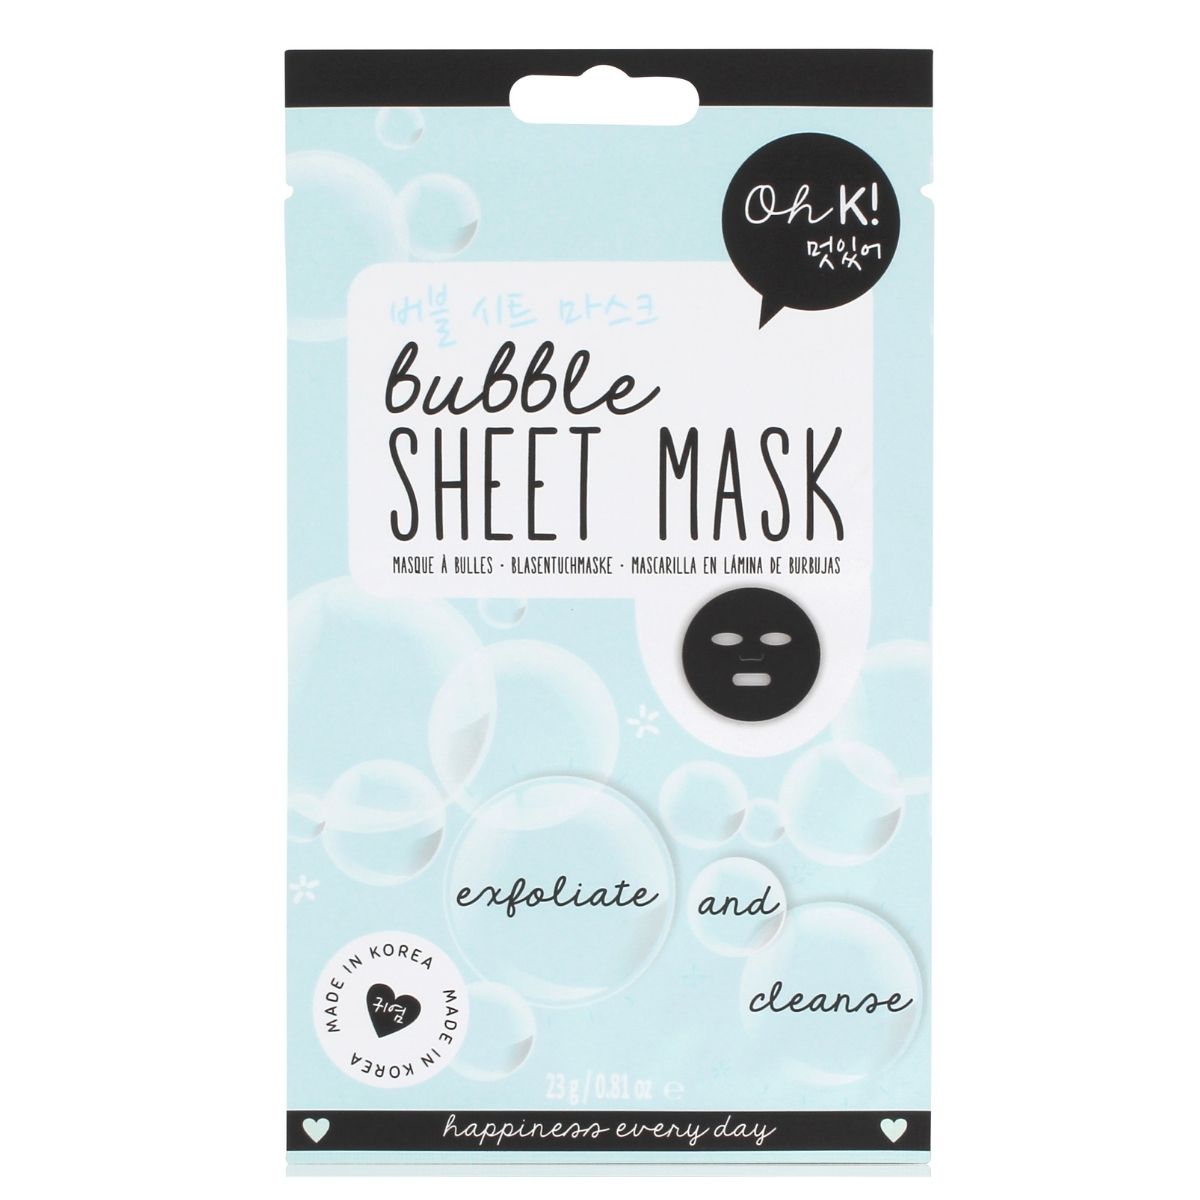 Oh K! Exfoliating Bubble Sheet Mask